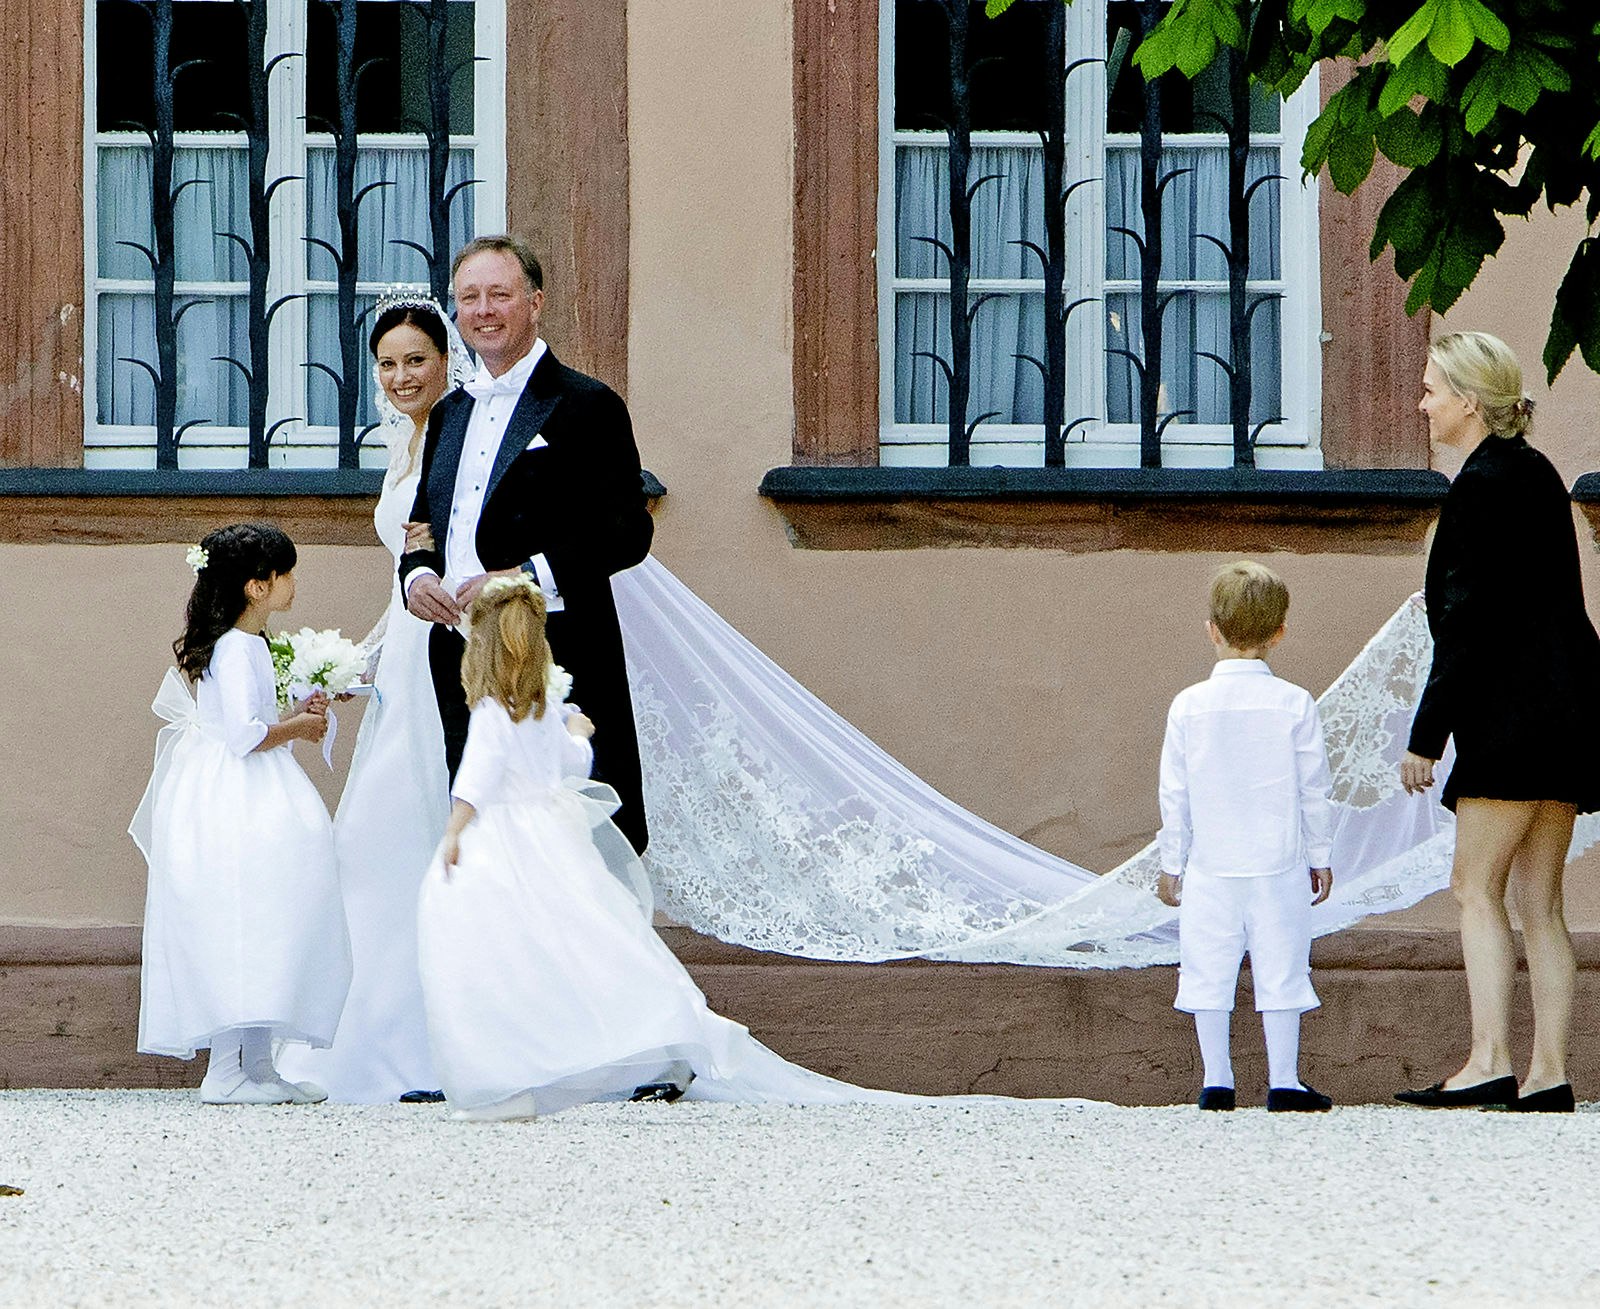 Se billederne: Kronprins Frederik og Mary til bryllup i Berleburg | SE og HØR